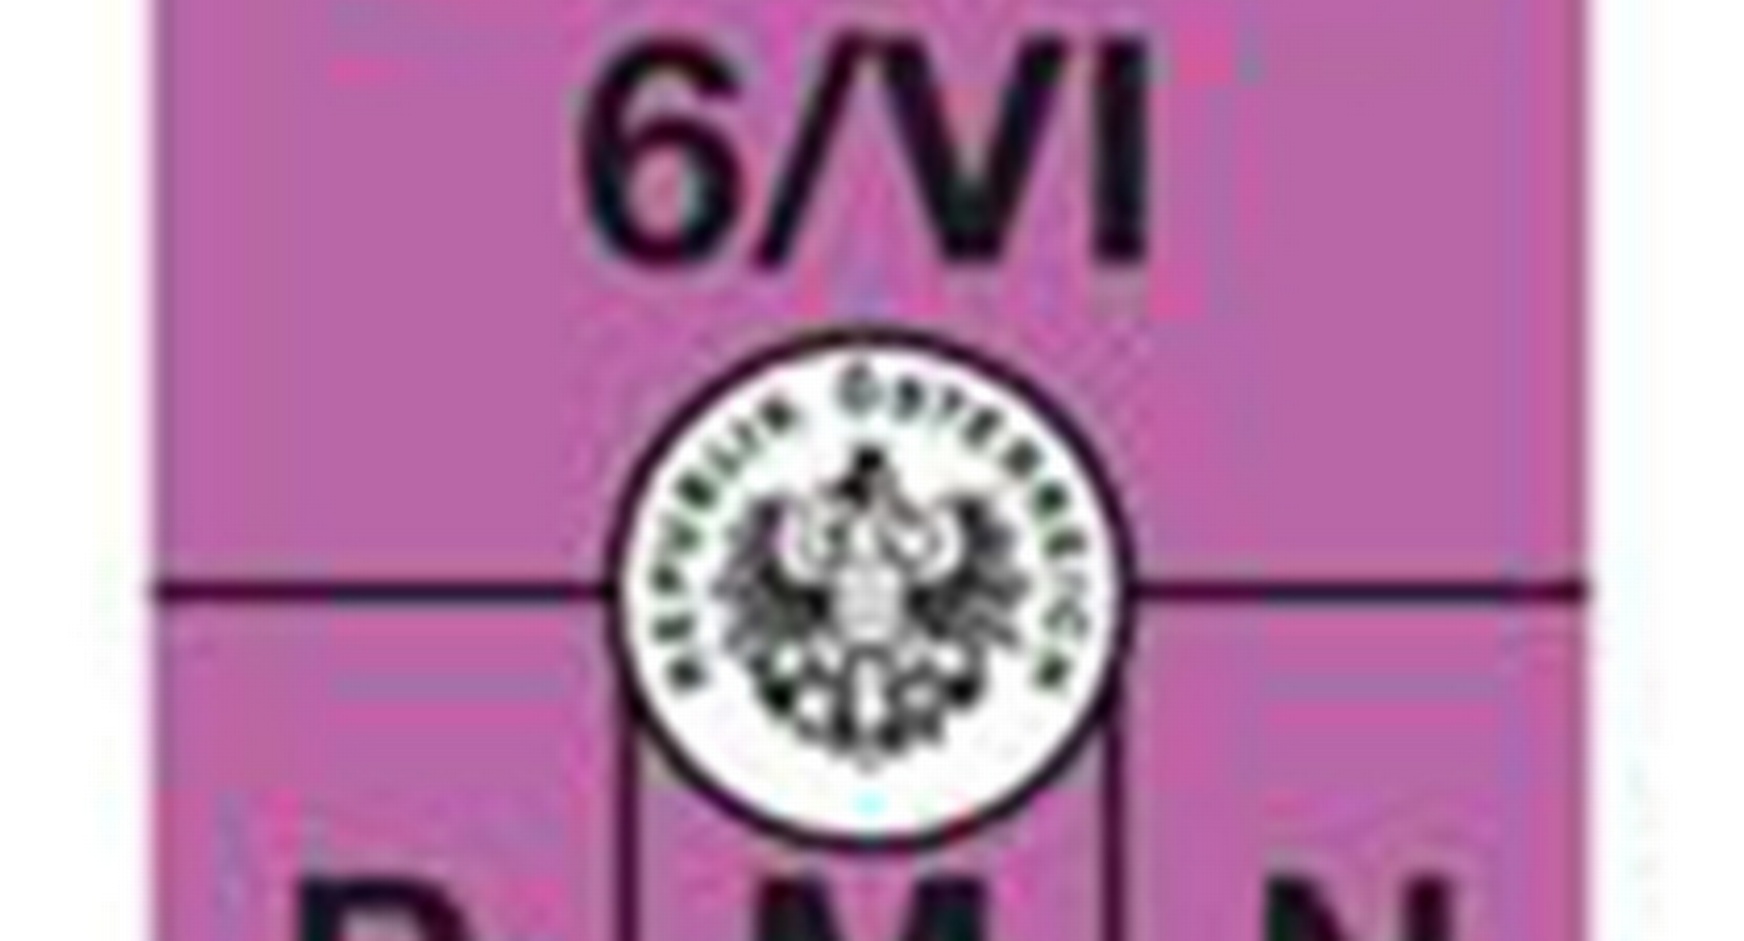 Bild der Abgasplakette Euro 6: Violette Plakette mit Beschriftung